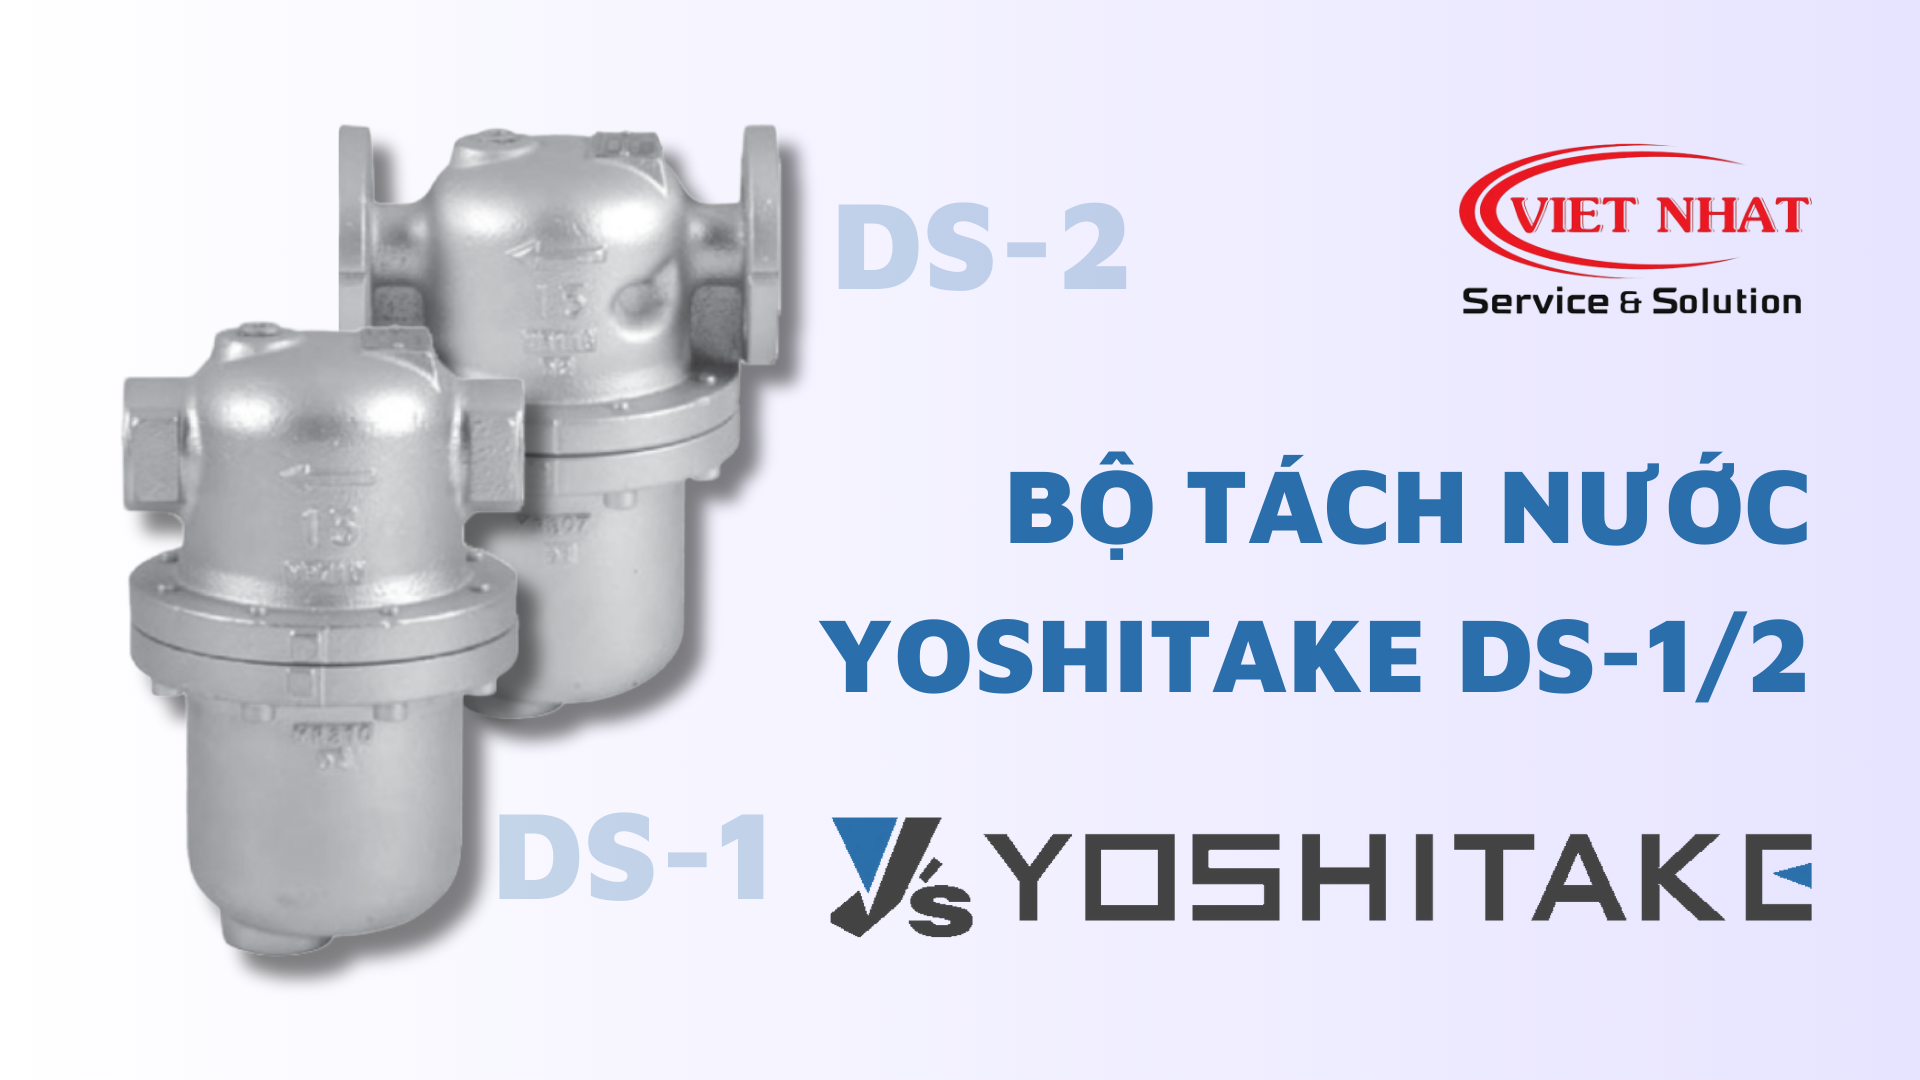 Bộ Tách Nước DS-1 và DS-2 Yoshitake: Hiệu Quả và Tiết Kiệm Năng Lượng